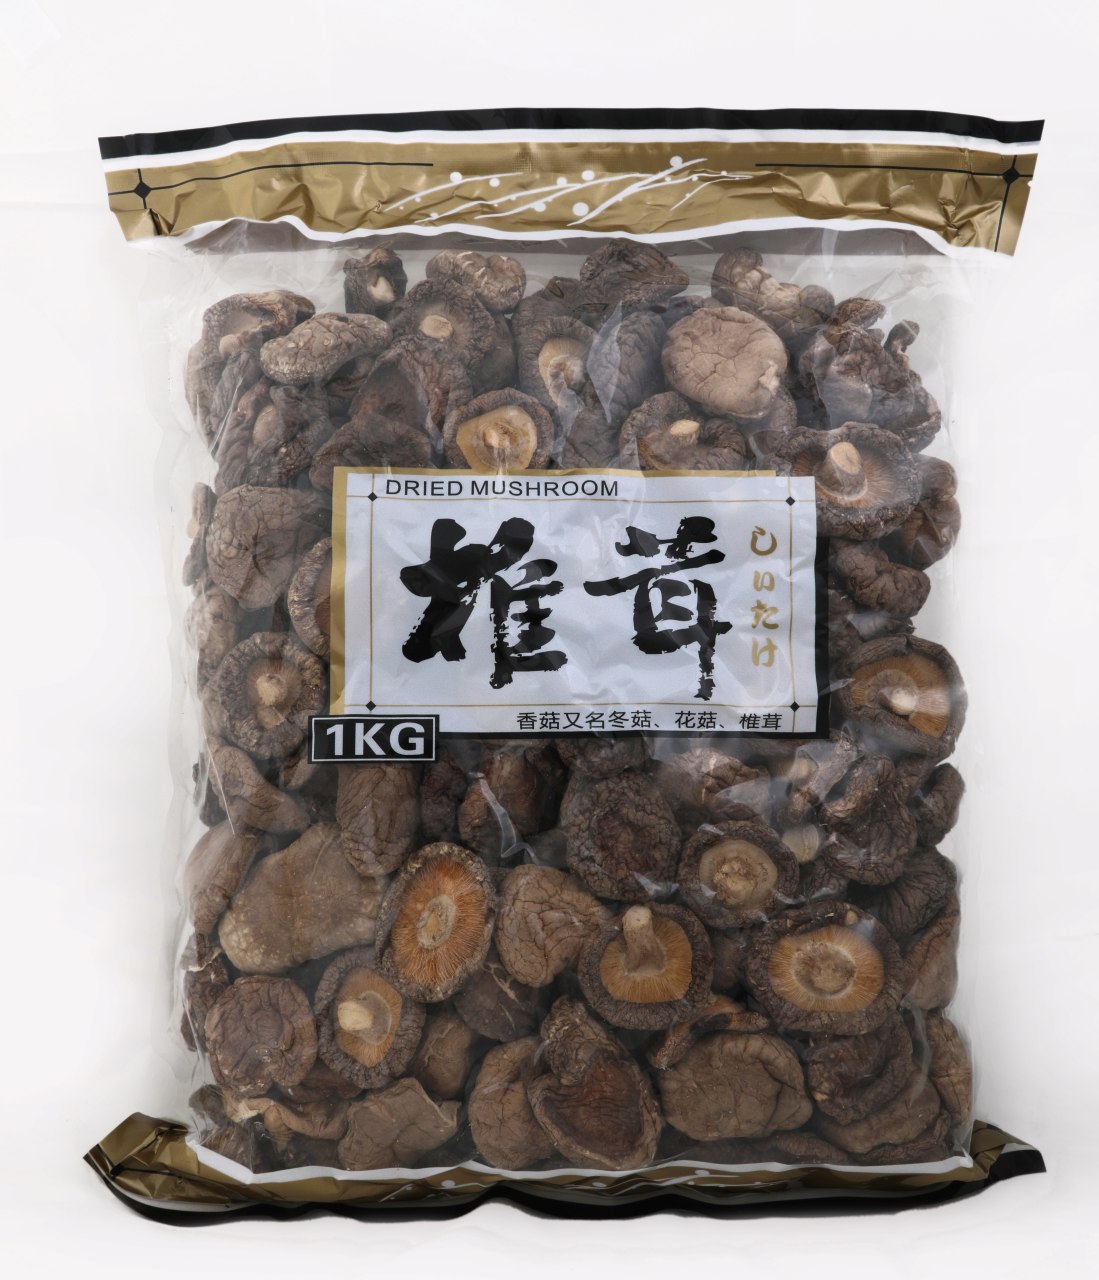 قارچ خشک شیتاکه (شیتاکی) ۱۰۰۰ گرمی  shitake mushrooms dried